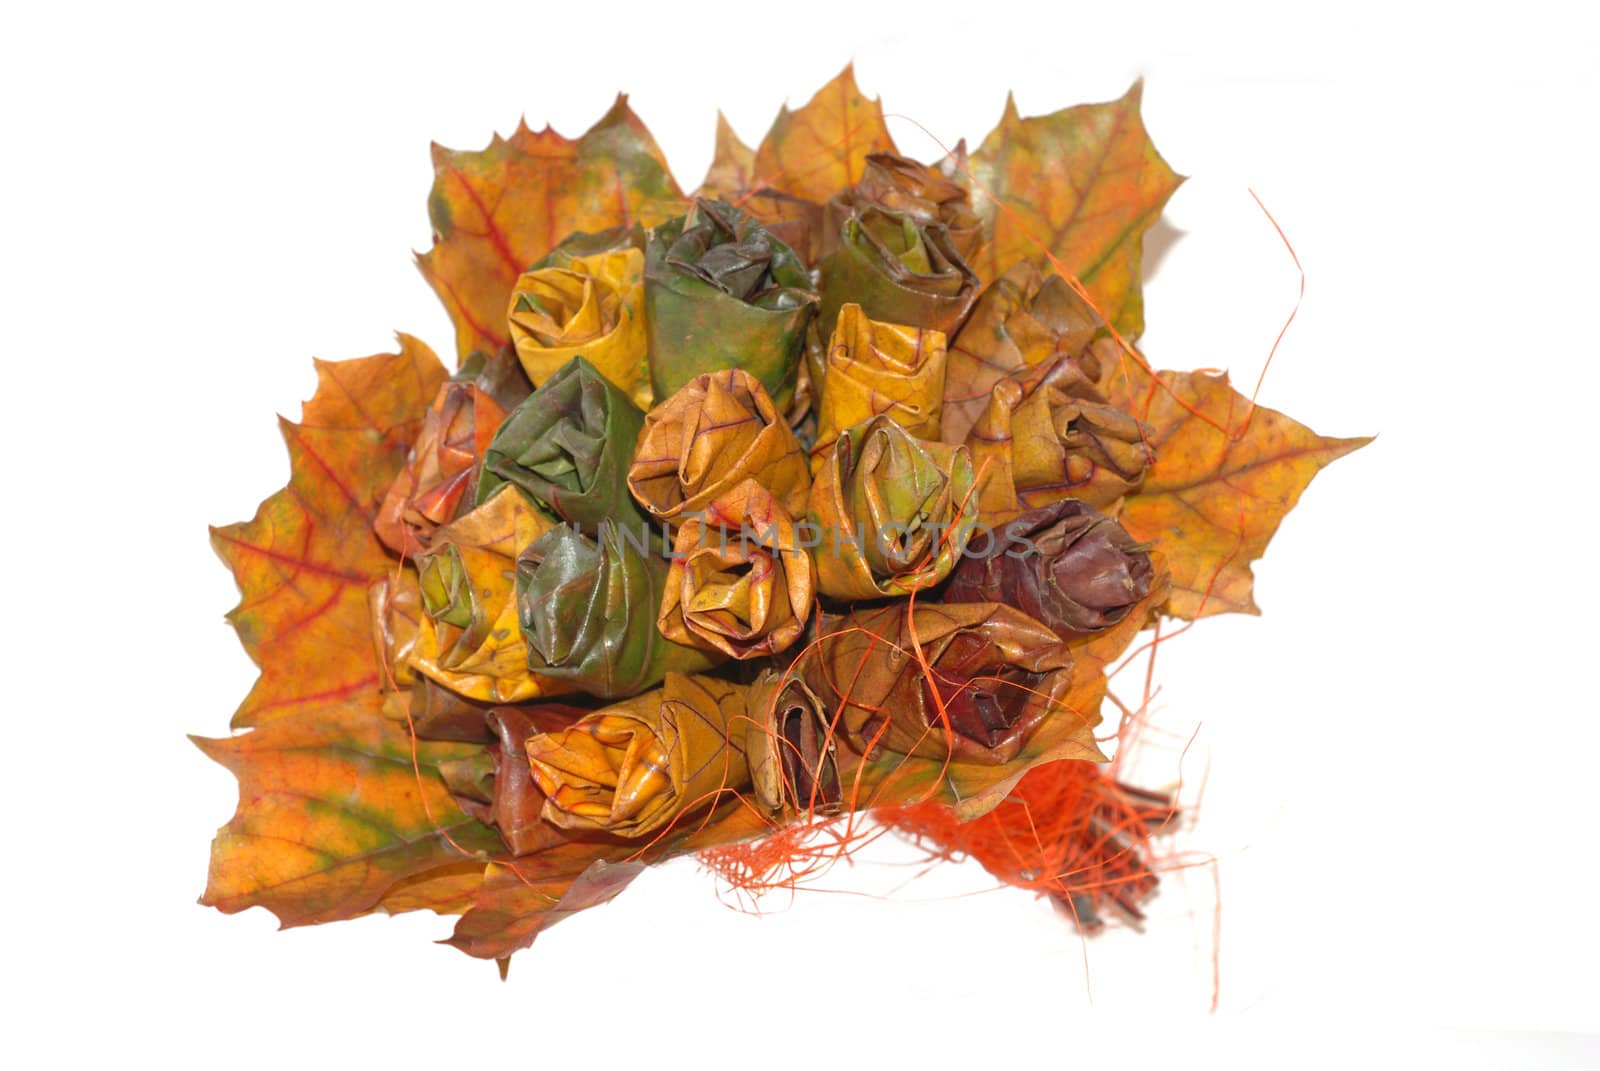 A bouquet of autumn leaves. by wojciechkozlowski